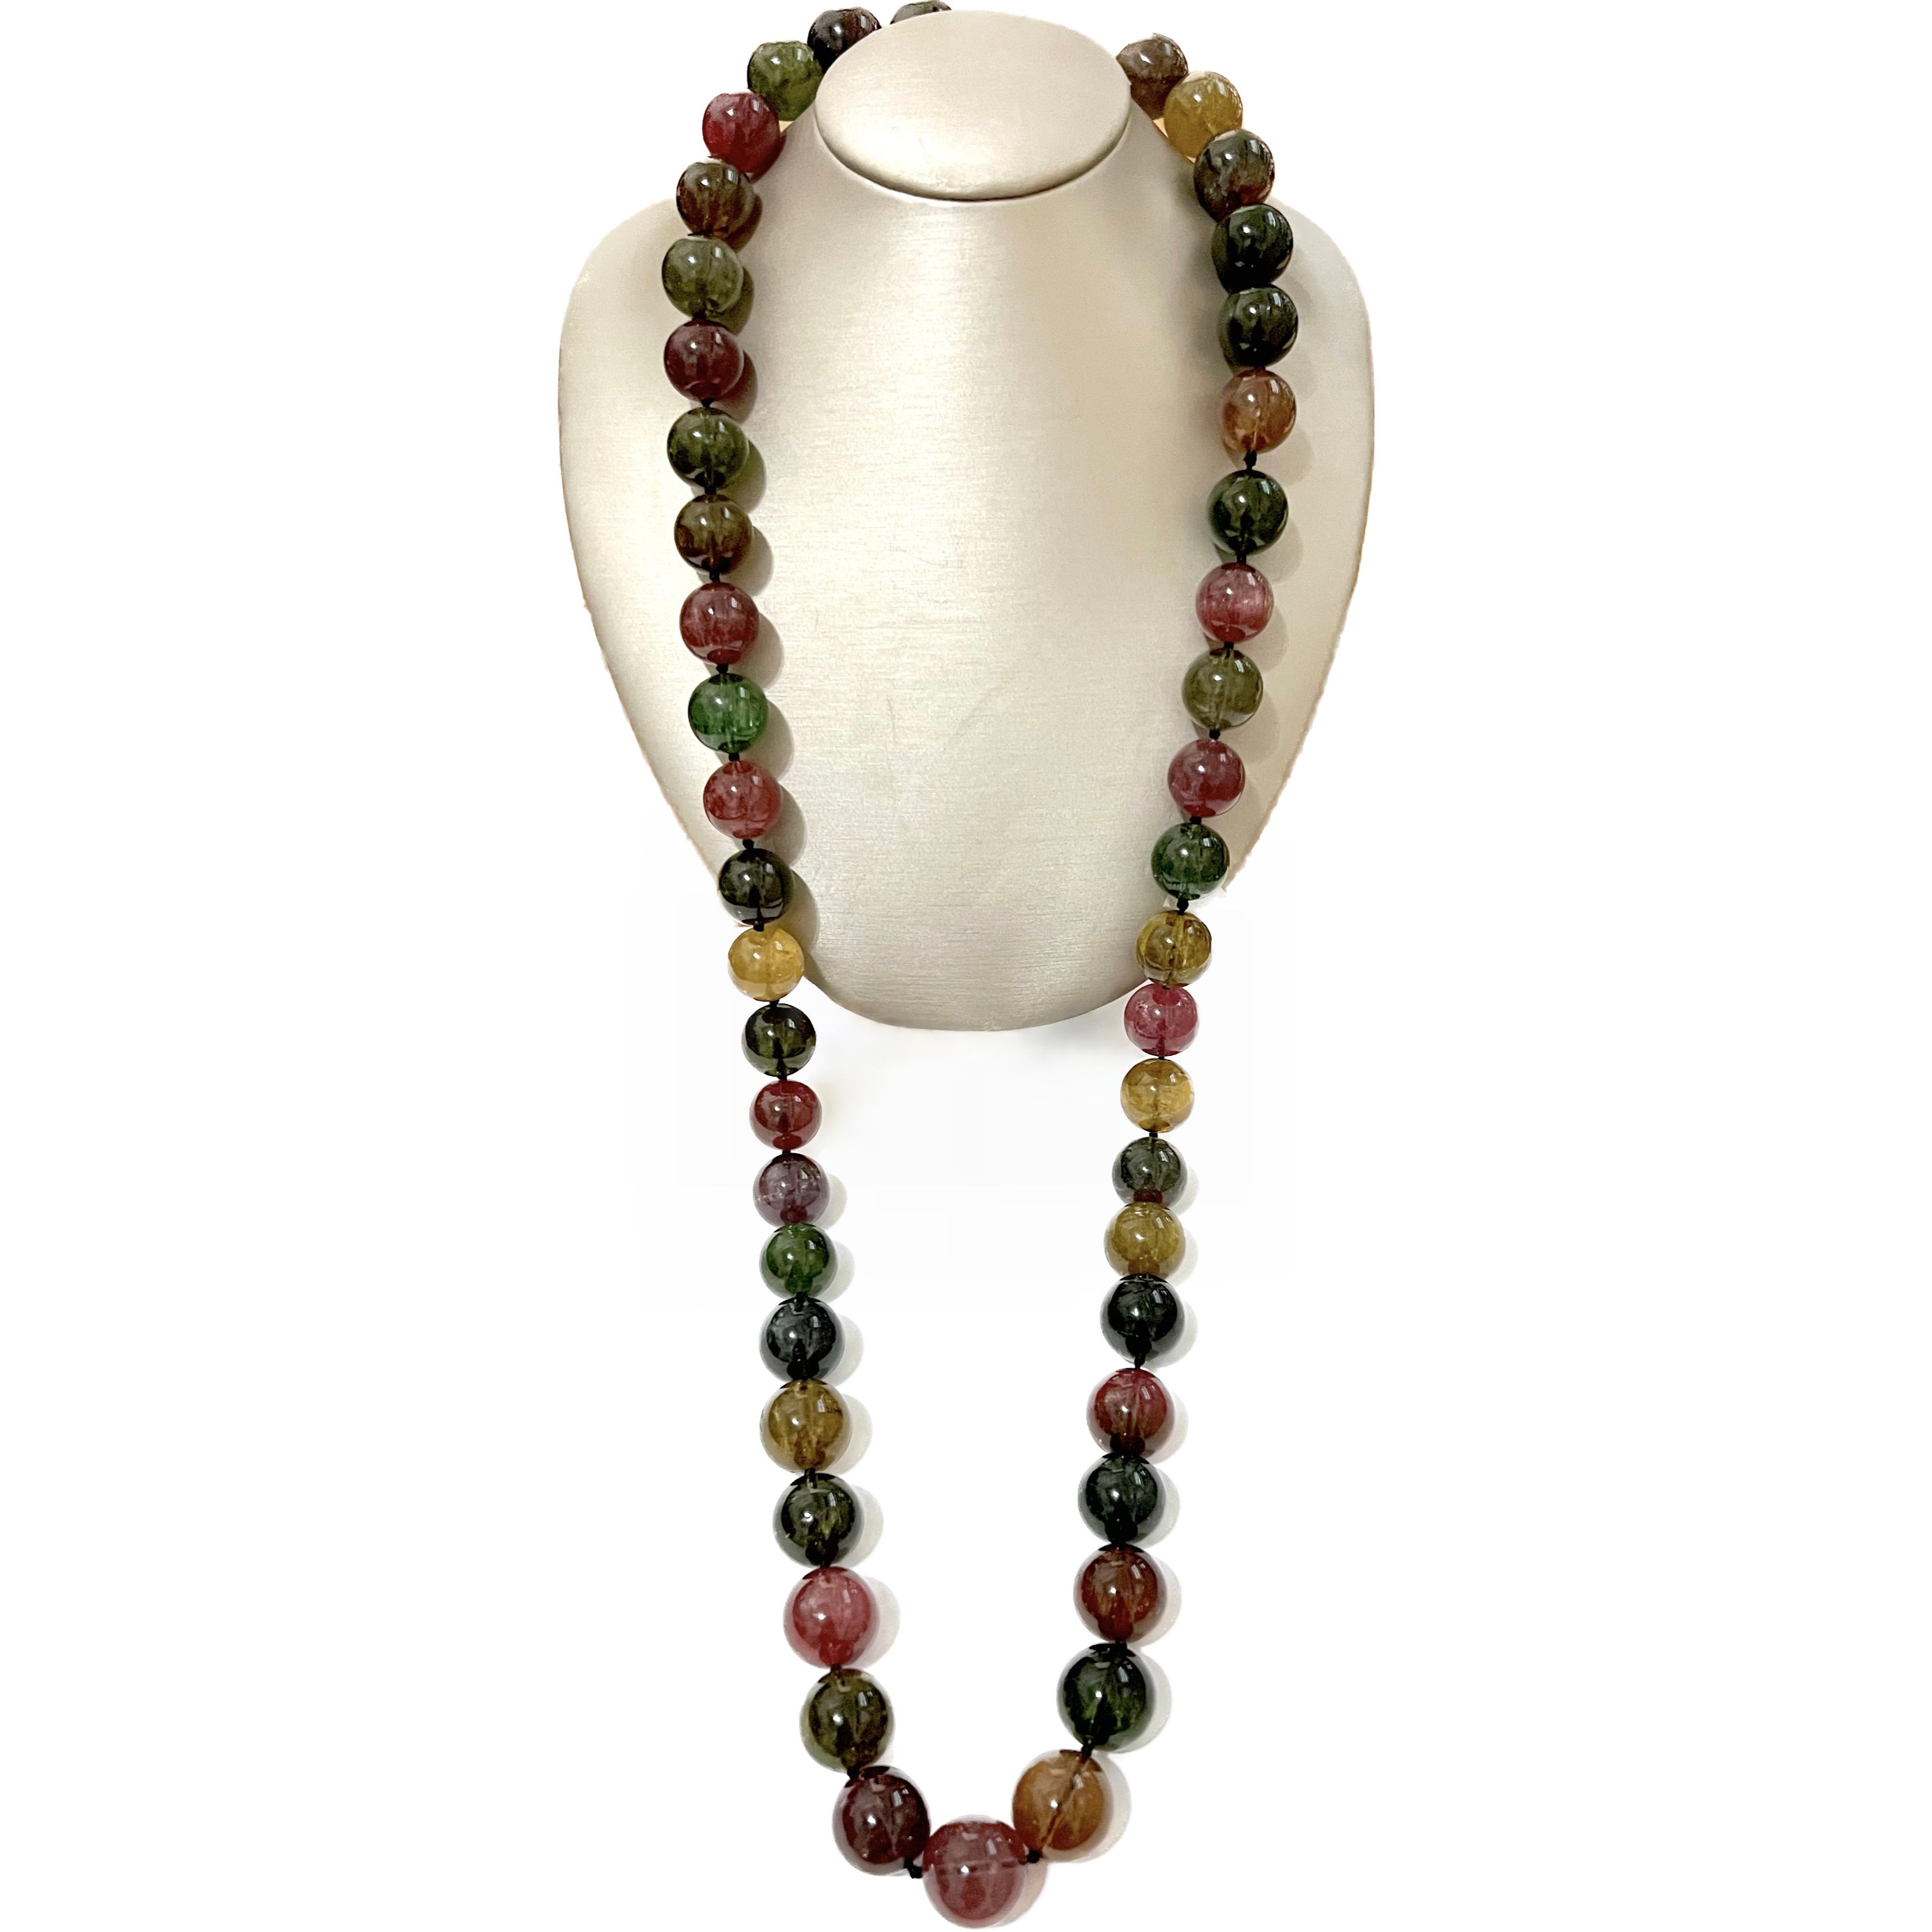 Cet étonnant collier de perles de tourmaline multicolores s'accordera avec toutes les tenues.  Les couleurs riches et vibrantes des perles de tourmaline rouge bordeaux, vertes, violettes et jaunes attireront l'attention de tous !  La taille des